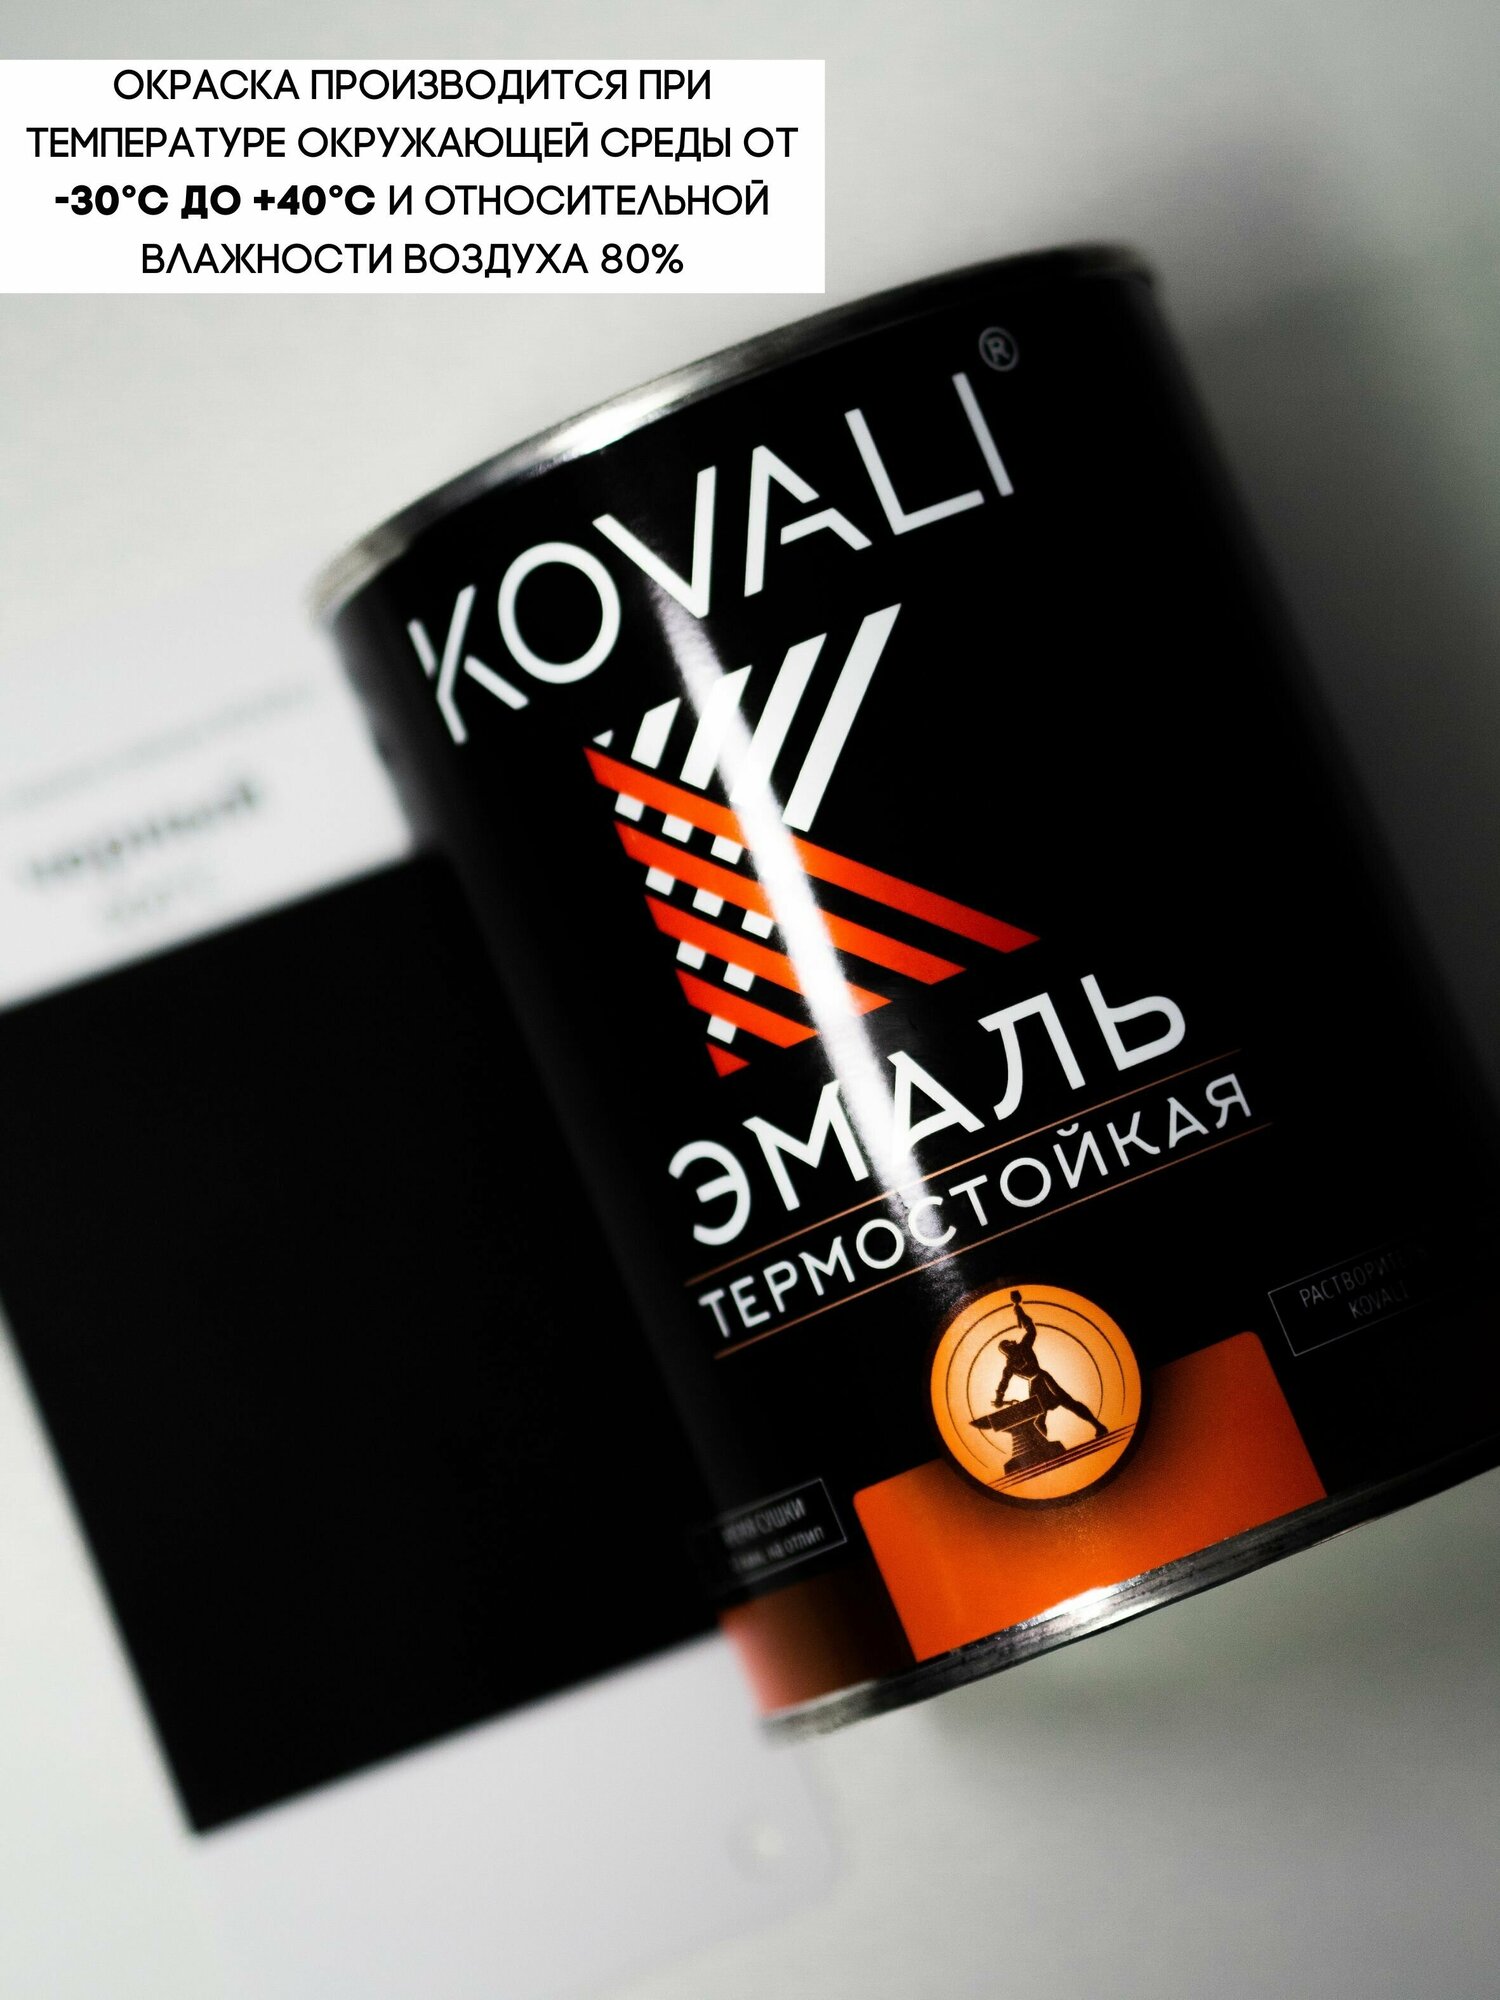 Термостойкая эмаль KOVALI RAL 9004 Сигнальный черный 400С 0,8кг краска по металлу, по ржавчине, быстросохнущая ,краска Ковали - фотография № 4